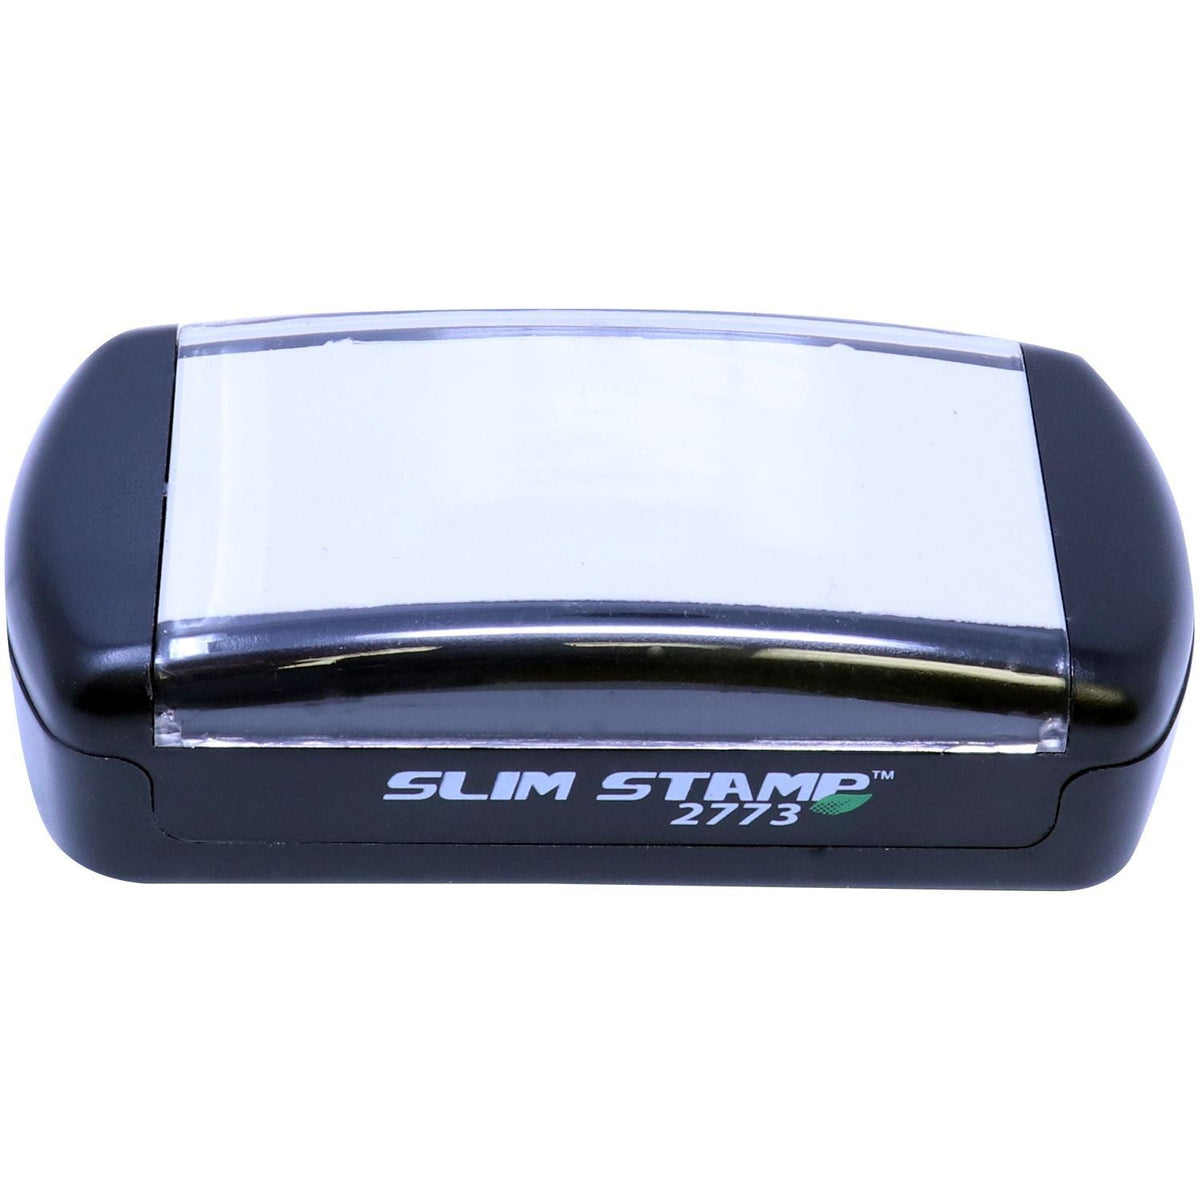 Slimstamp Custom Stamp 2773 Top Front